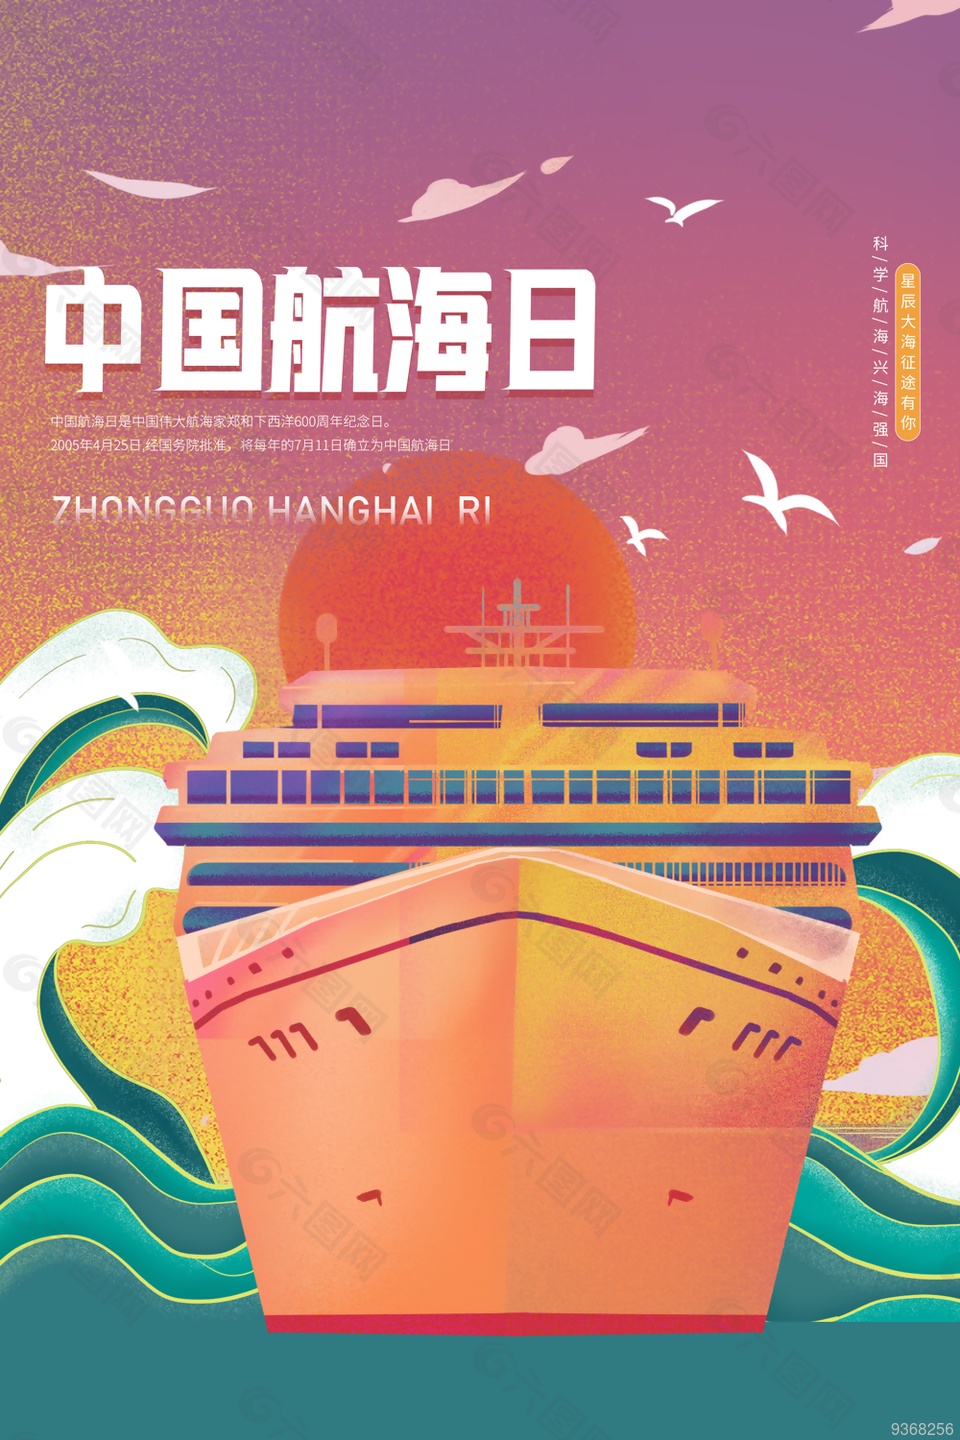 中国航海日宣传海报